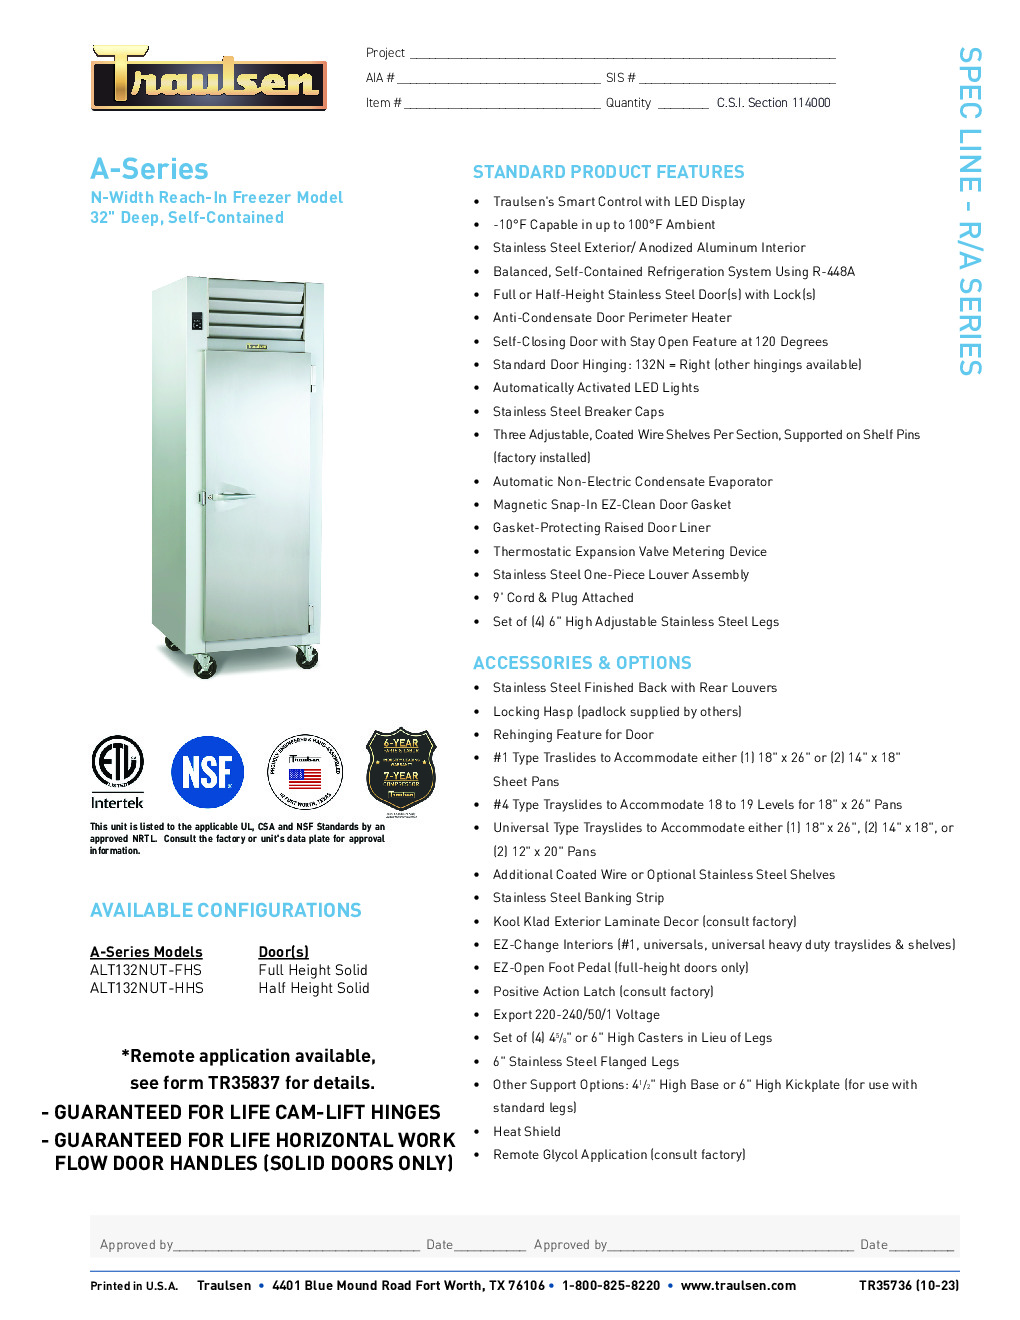 Traulsen ALT132NUT-FHS Reach-In Freezer